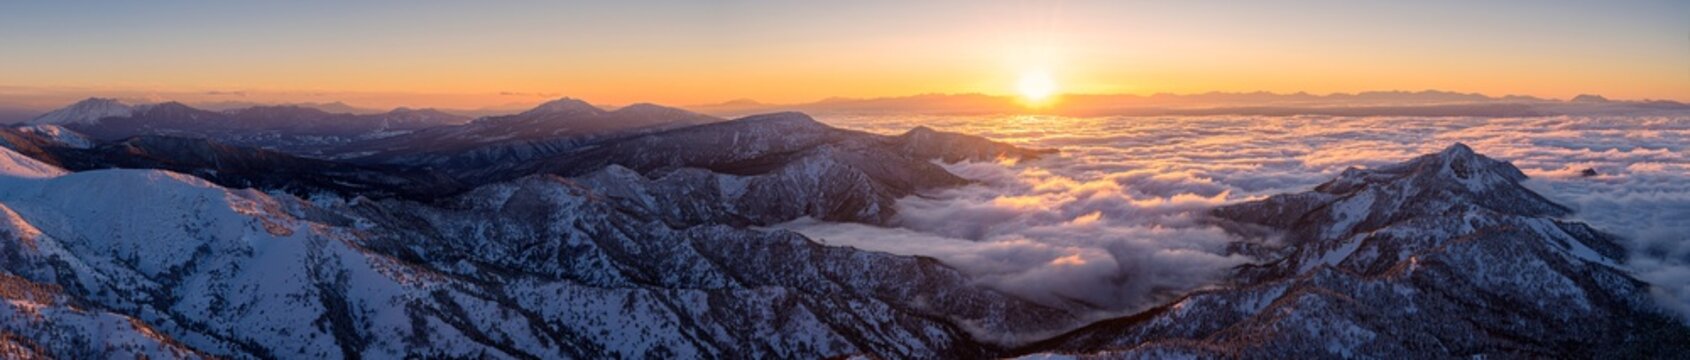 長野県・山ノ内町 冬の横手山から望む雲海と夕景 パノラマ